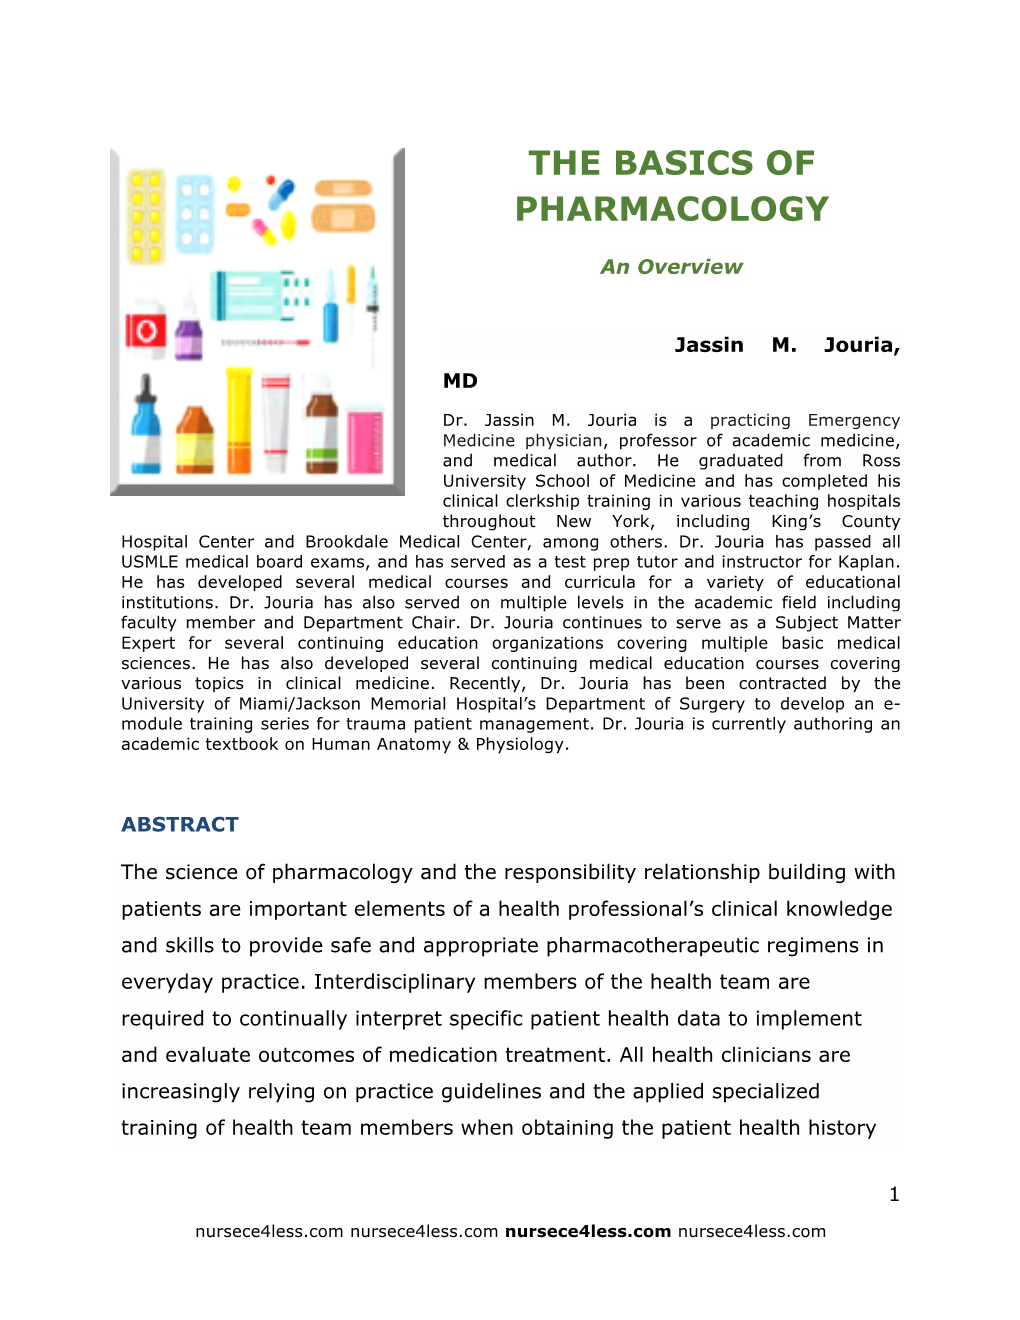 The Basics of Pharmacology